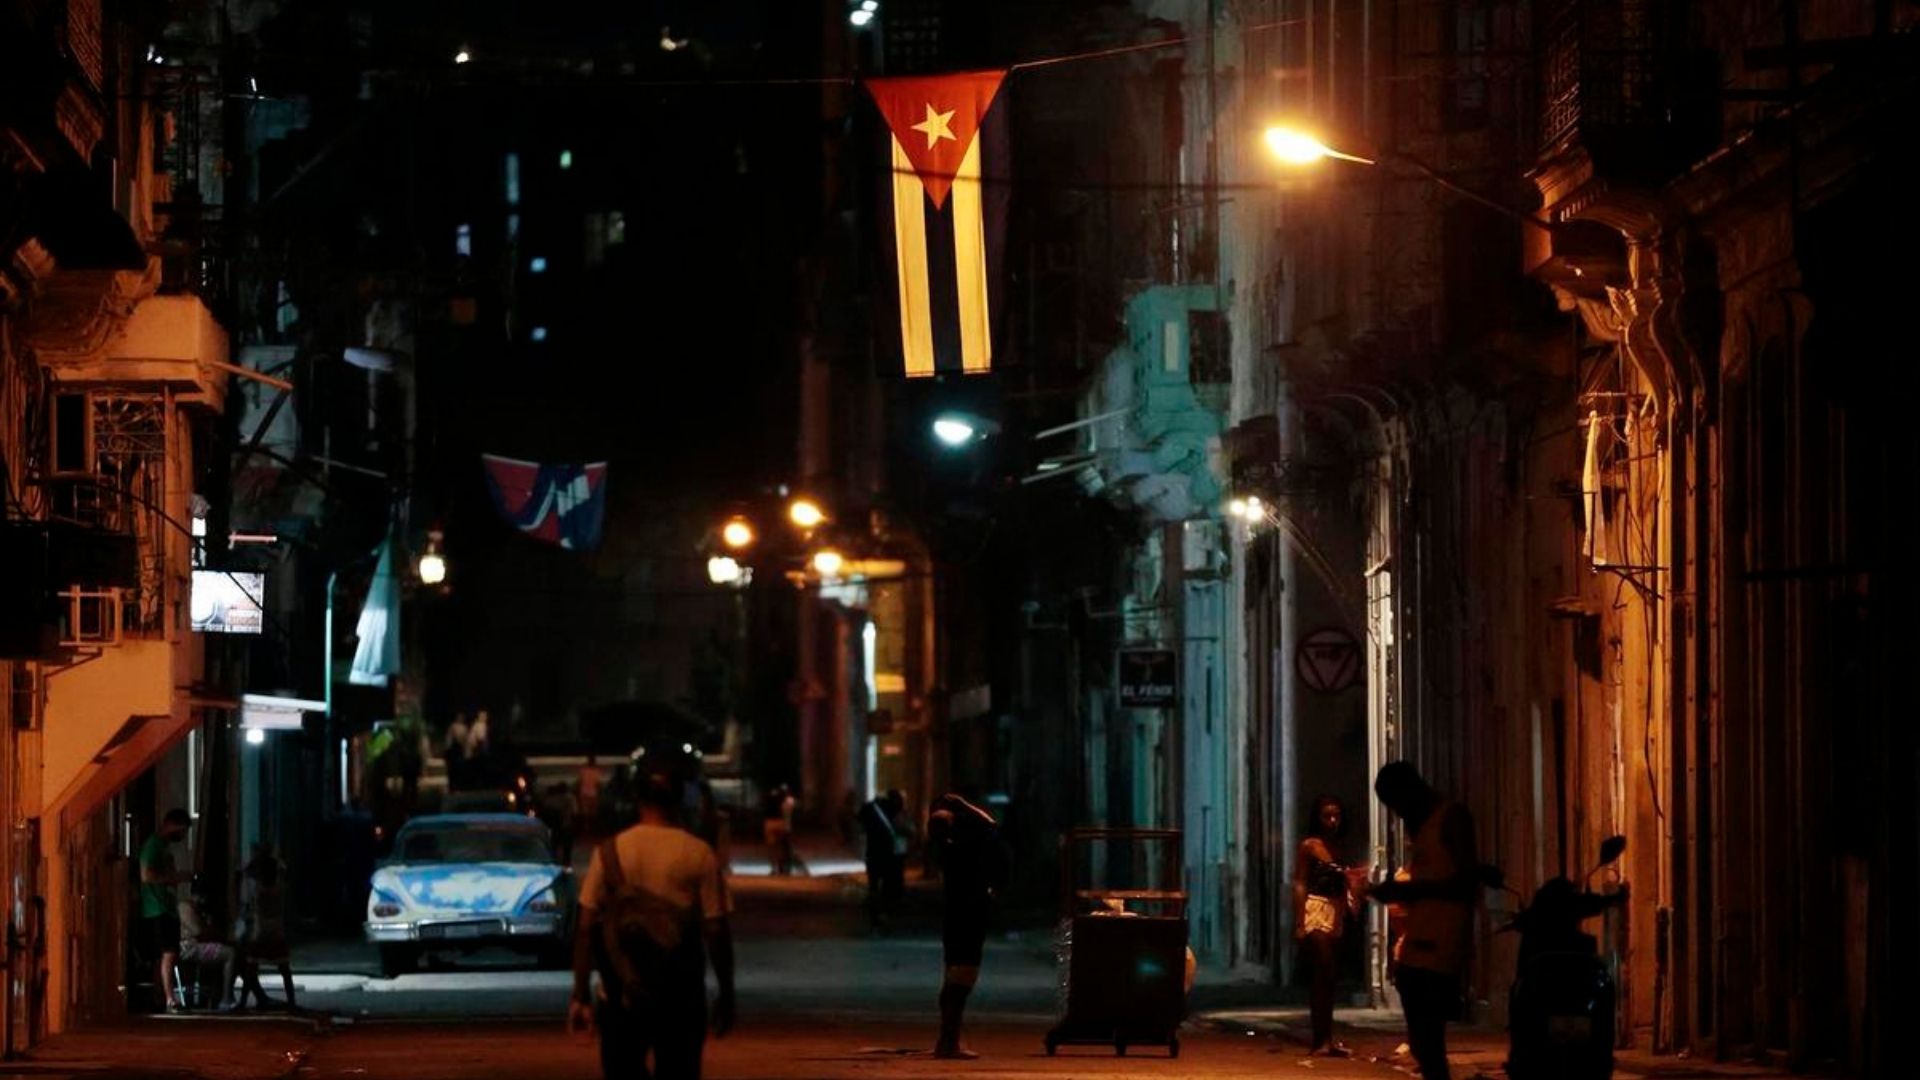 El 23 de mayo el gobernante cubano Miguel Díaz-Canel dijo que "la situación energética del país sigue siendo muy tensa"